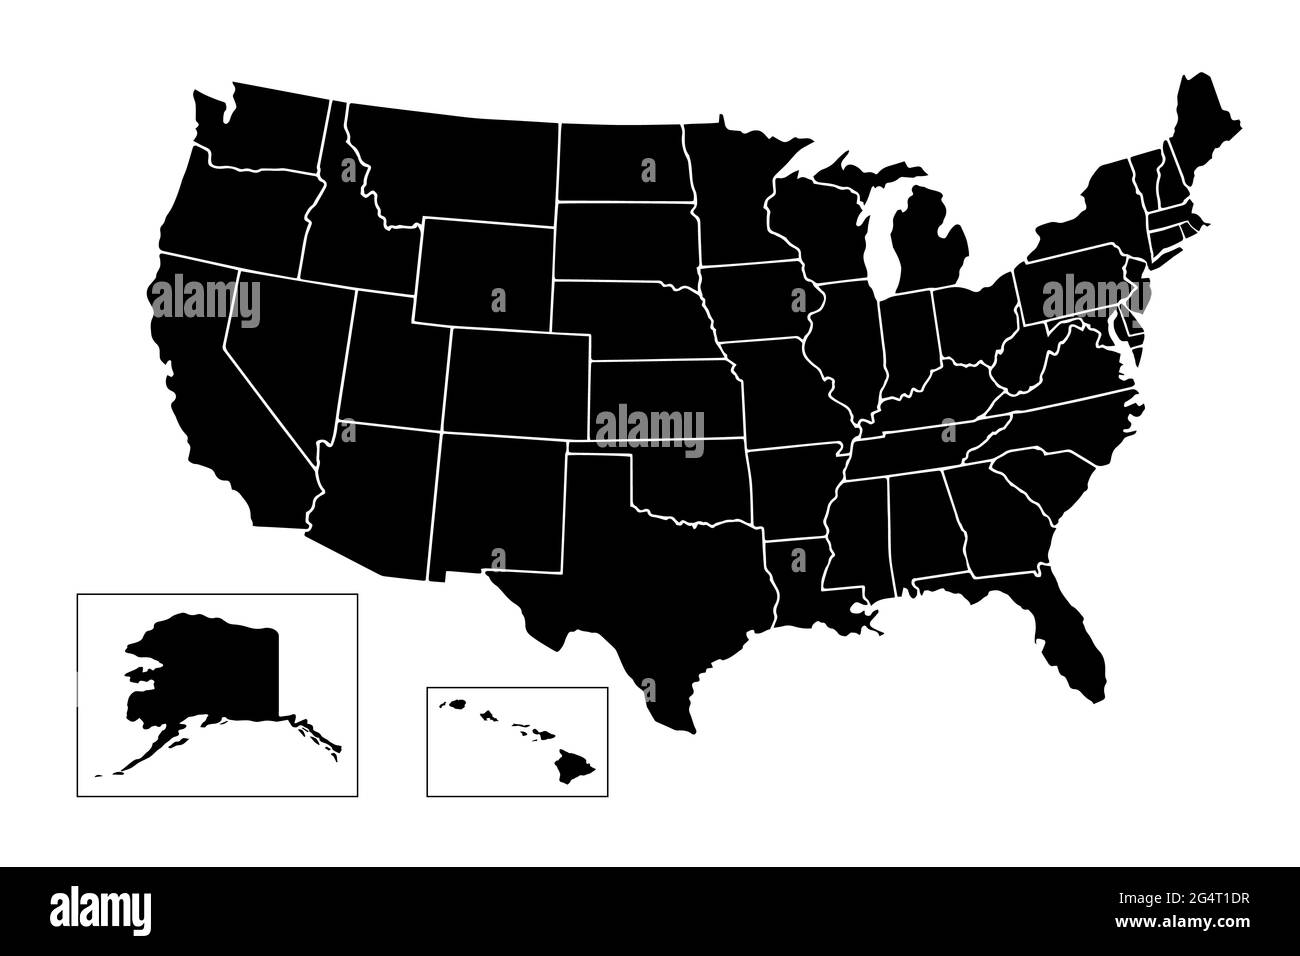 Stati Uniti d'America, Mappa di Stati Uniti d'America con il nome dei membri, American mappa in bianco e nero Foto Stock